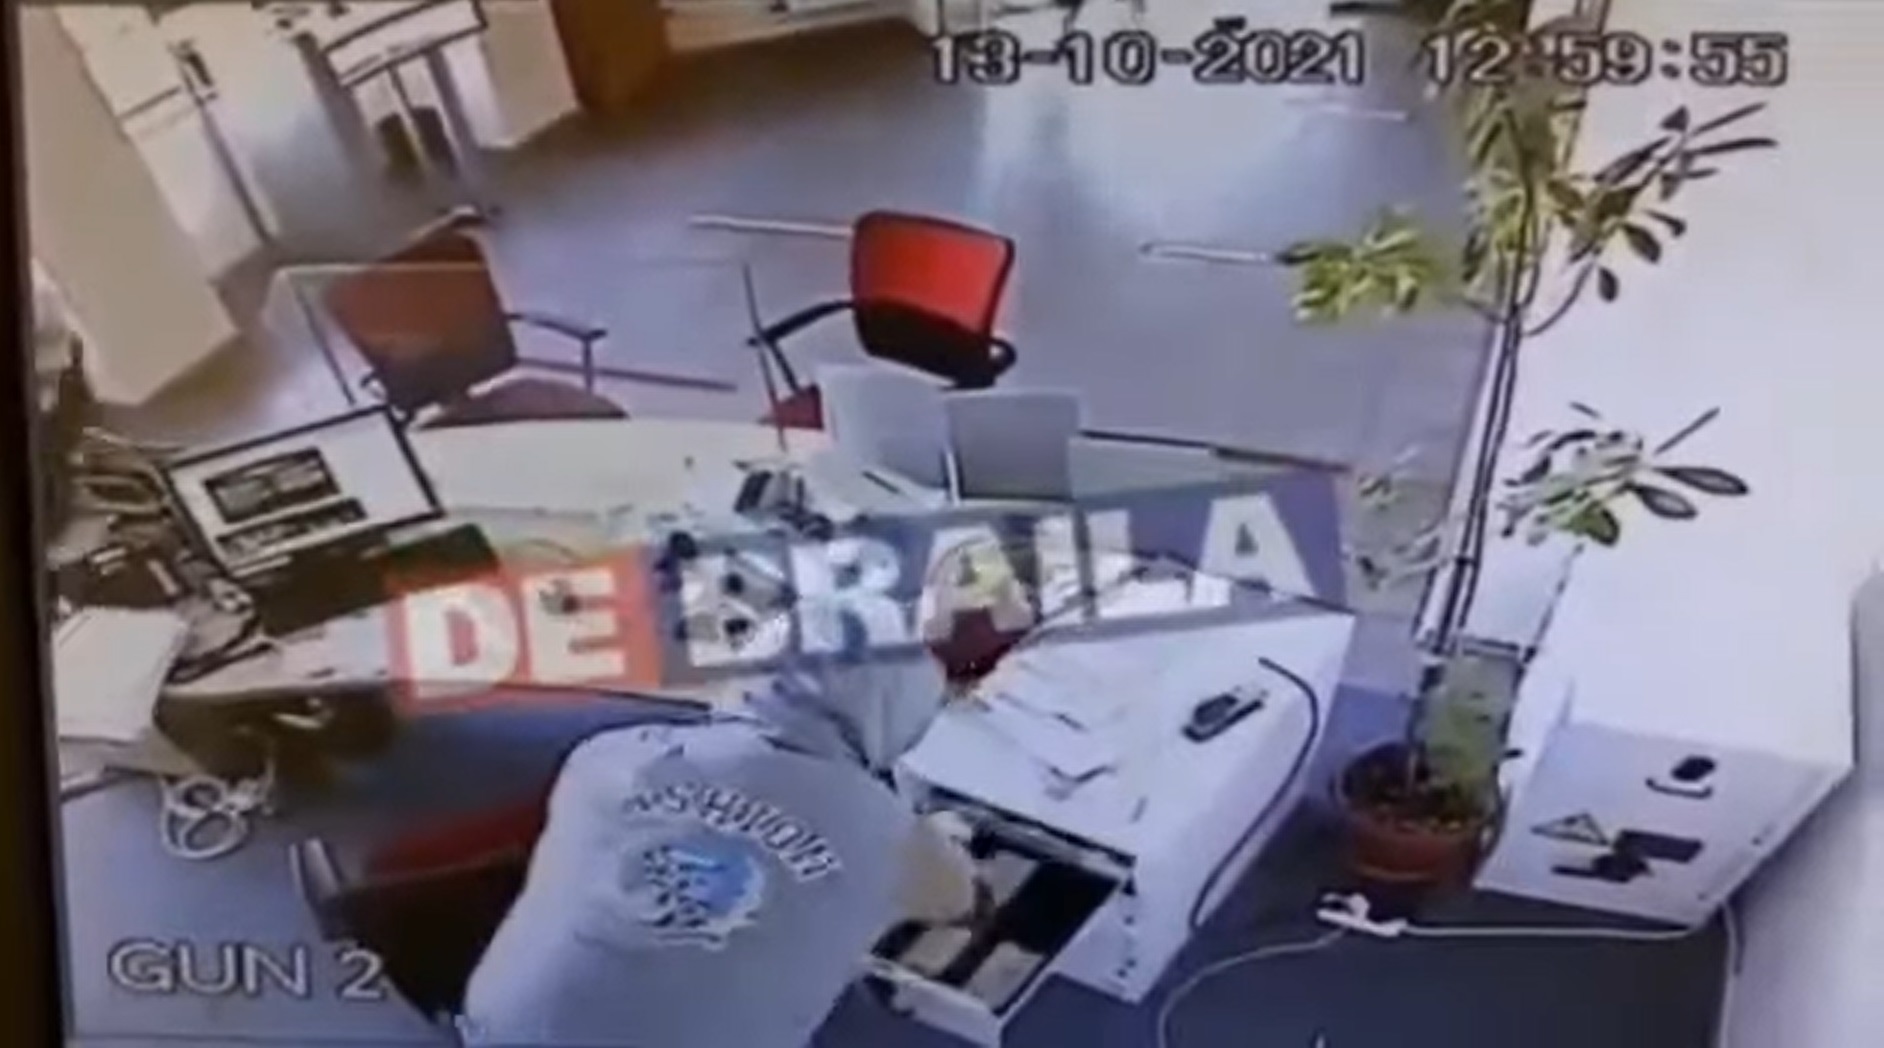 VIDEO. Momentul în care un hoț fură o sumă de bani dintr-o bancă din Brăila